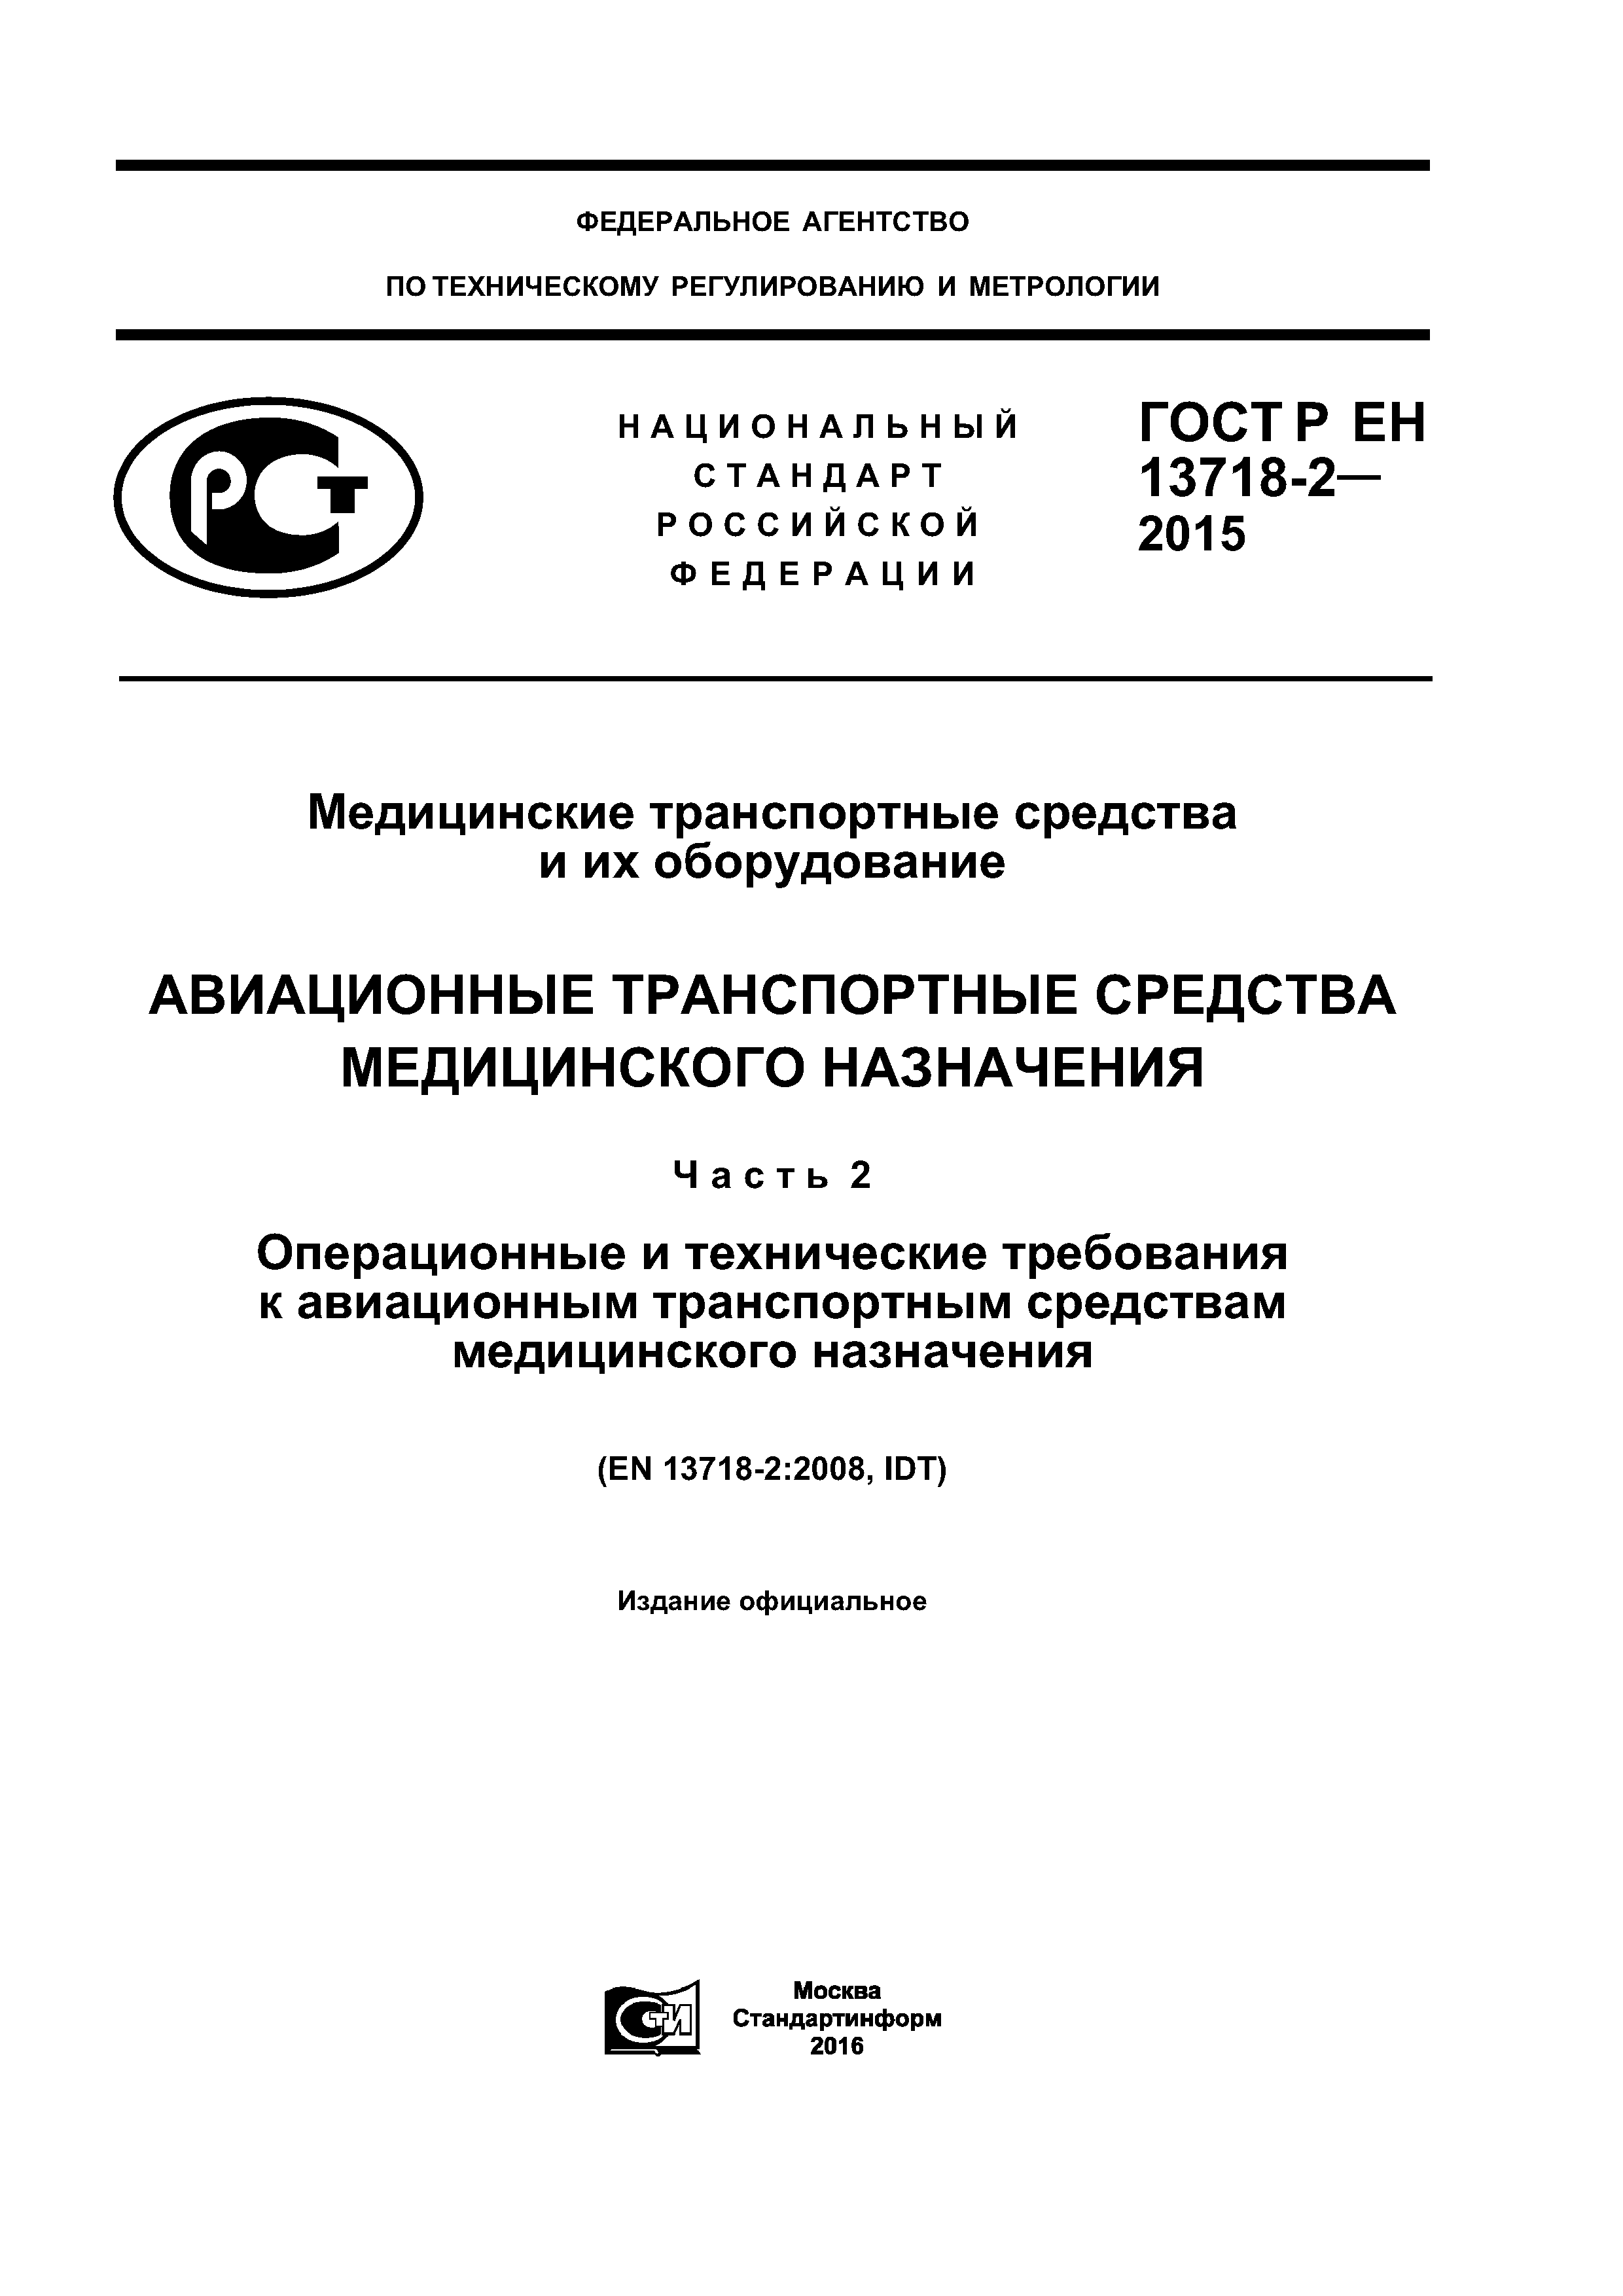 ГОСТ Р ЕН 13718-2-2015